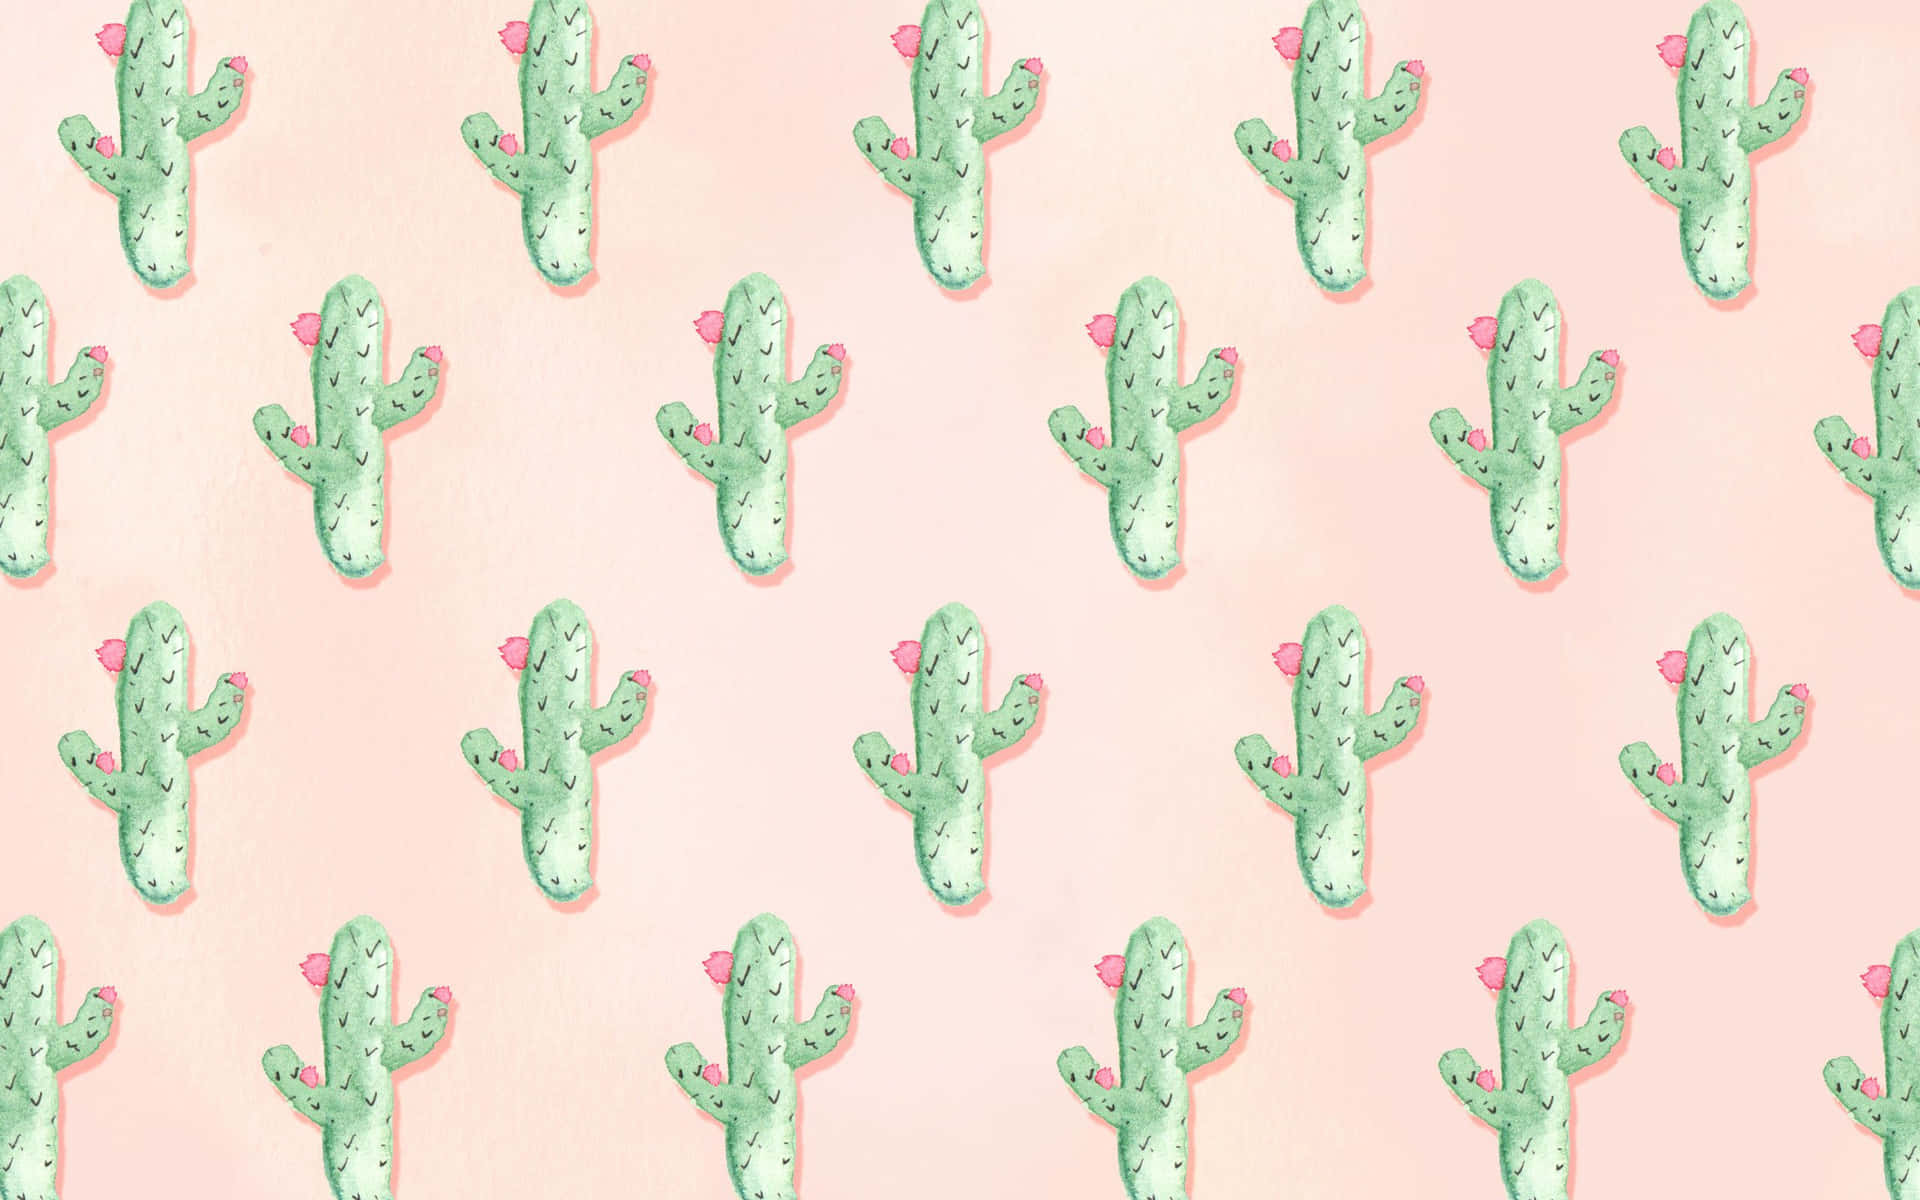 Imagende Patrón De Cactus De Dibujos Animados En Colores Pasteles Rosados